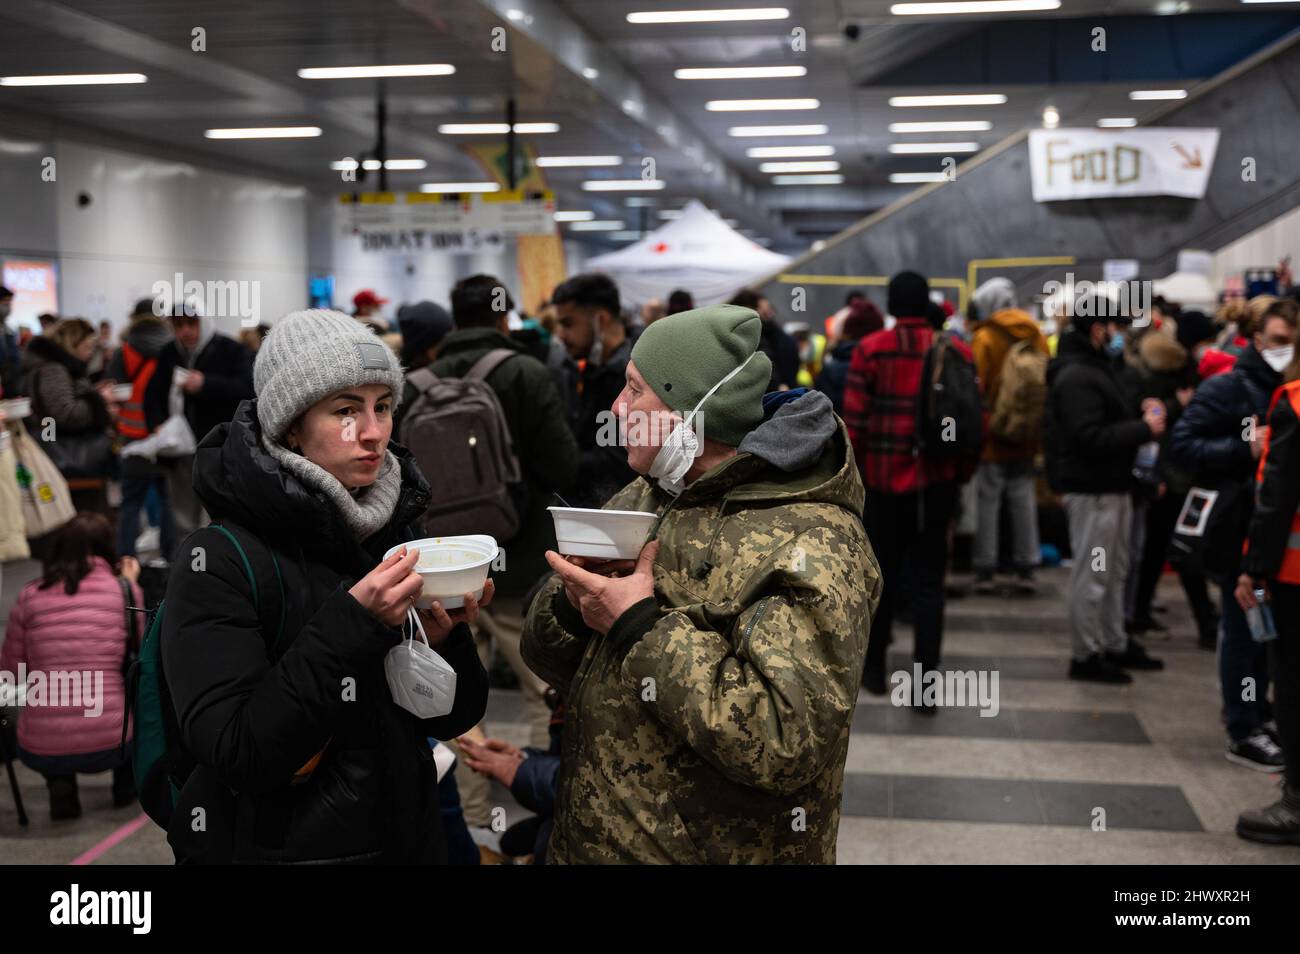 07.03.2022, Berlino, Germania, Europa - luogo di rifugio per i rifugiati di guerra dall'Ucraina dopo il loro arrivo alla stazione centrale di Berlino. Foto Stock